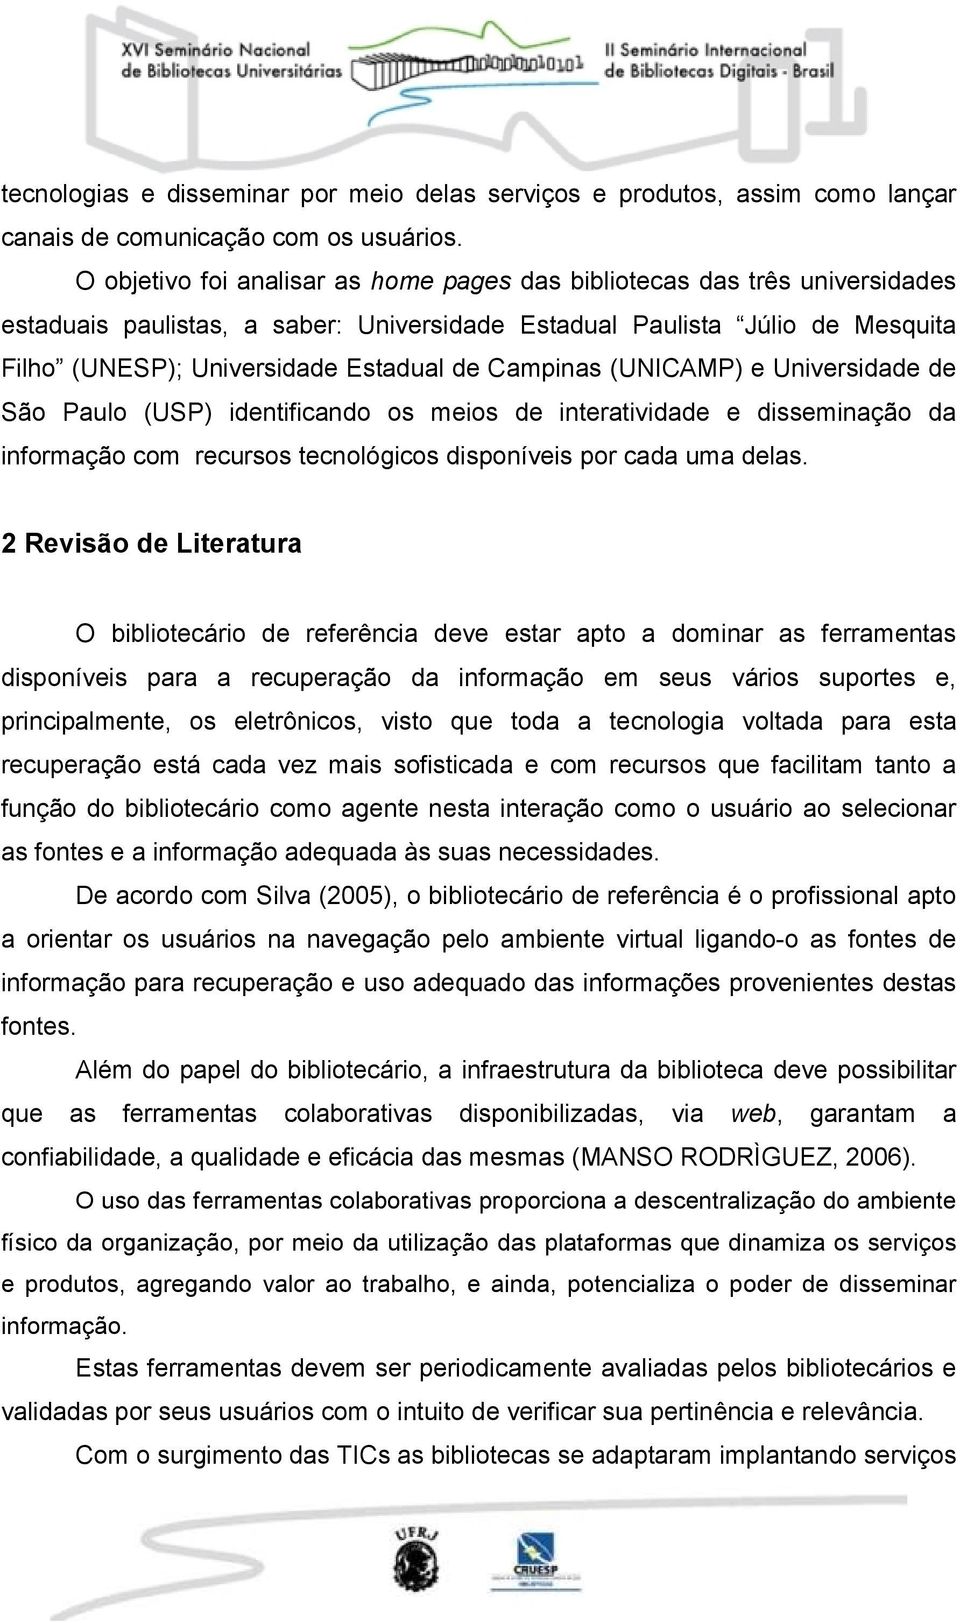 Campinas (UNICAMP) e Universidade de São Paulo (USP) identificando os meios de interatividade e disseminação da informação com recursos tecnológicos disponíveis por cada uma delas.